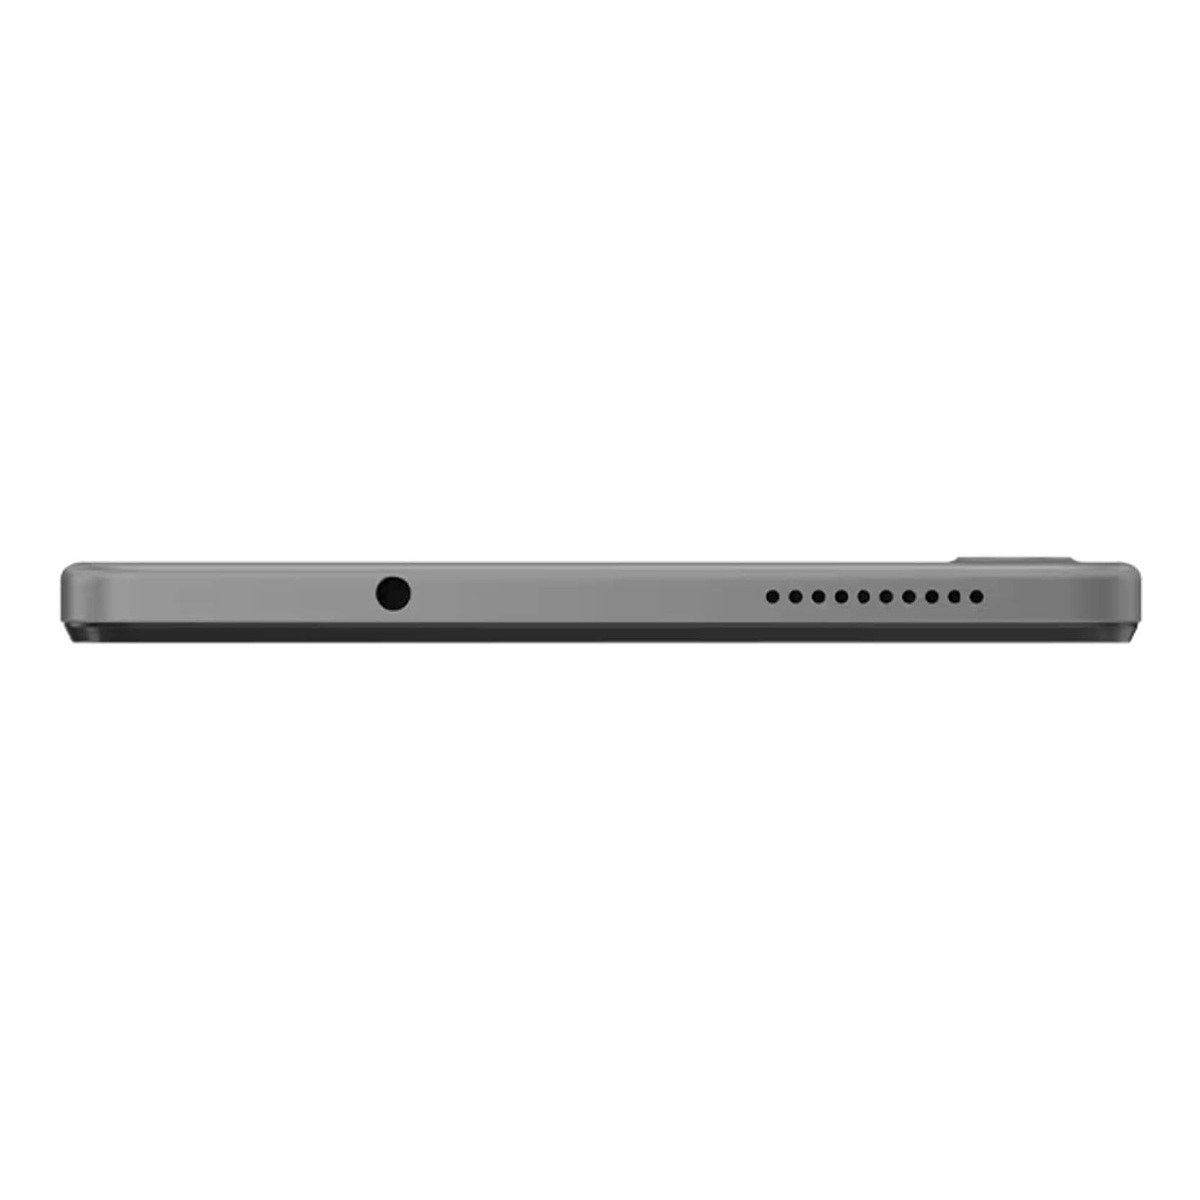 Lenovo TB-300 Tab M8, 8 inches HD, Android 12, MediaTek Helio A22, 2 GB RAM, 32 GB Storage, Arctic Gray, ZABU0048AE